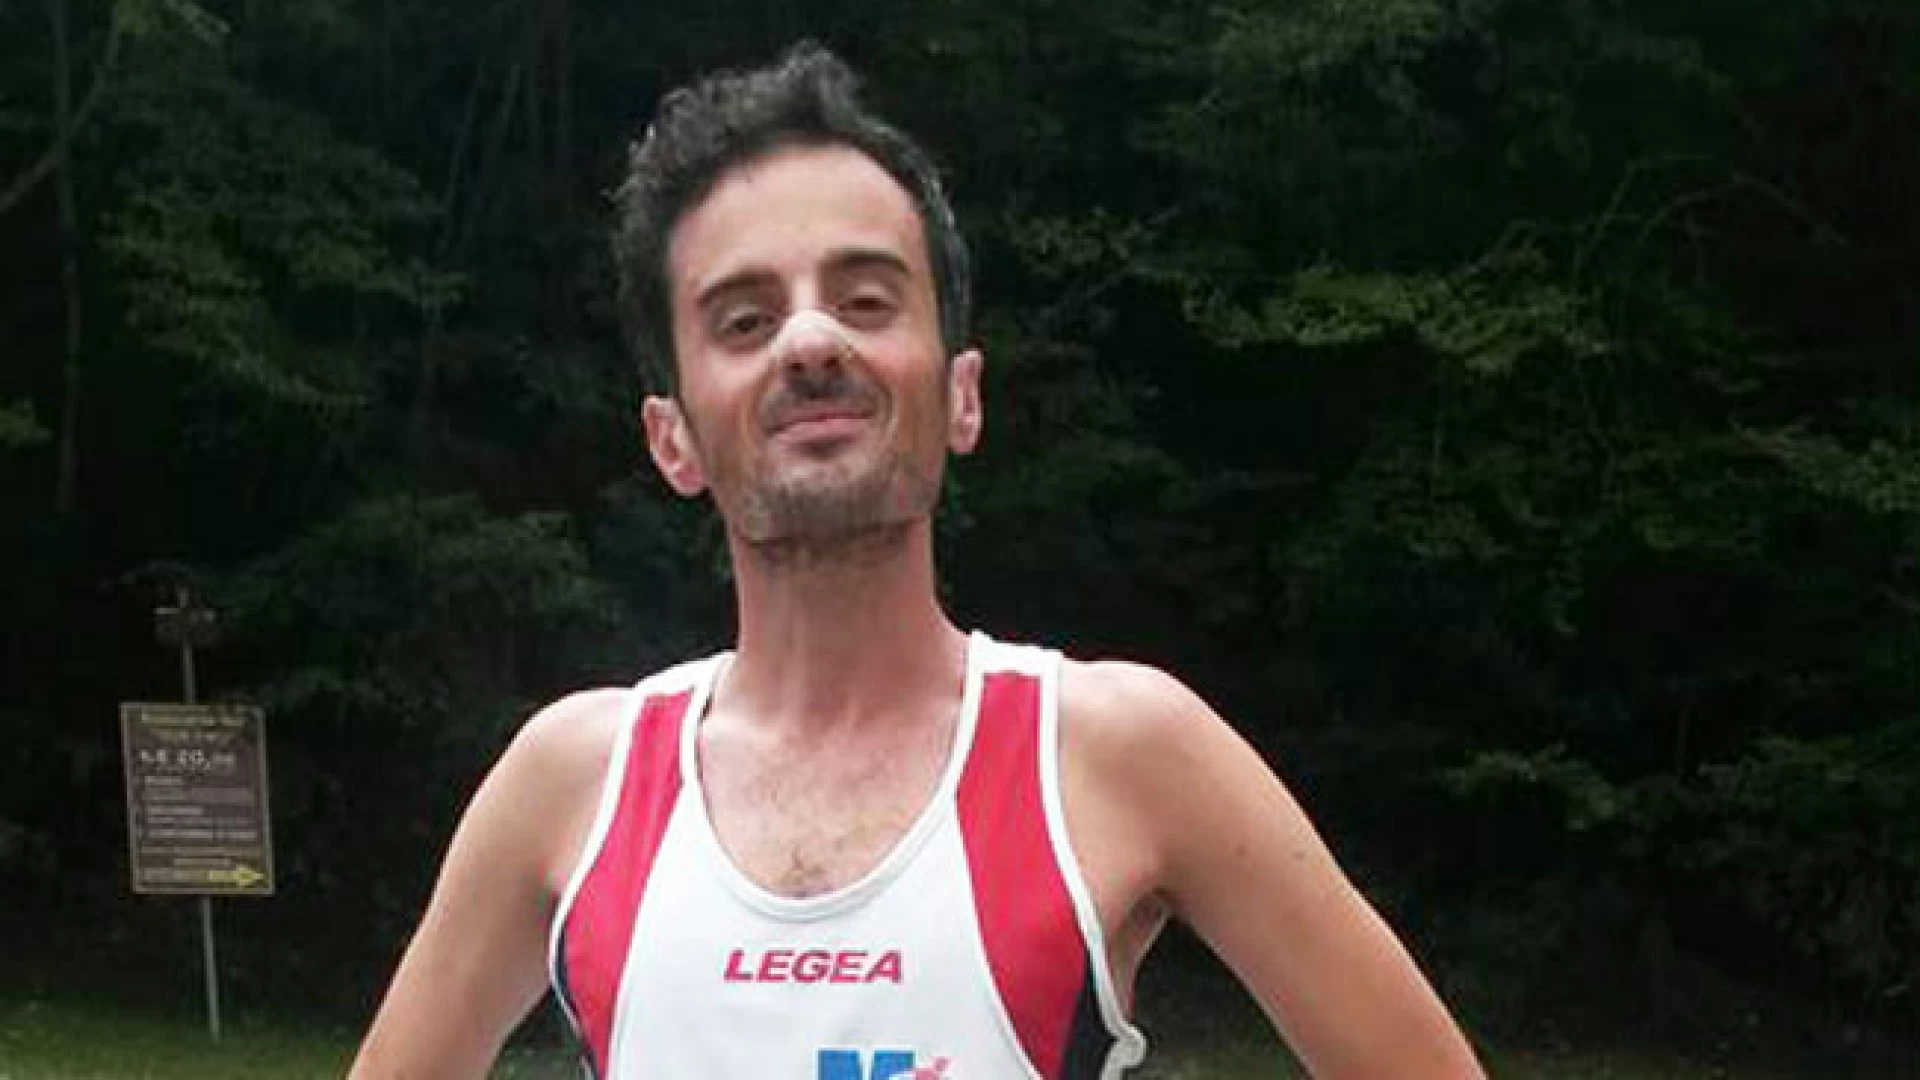 Pizzone: Elia Carlo Notardonato alla ribalta nazionale. Grande protagonista alla Milano Marathon 2018. Portato a termine il percorso di 42Km tra oltre ventimila concorrenti.